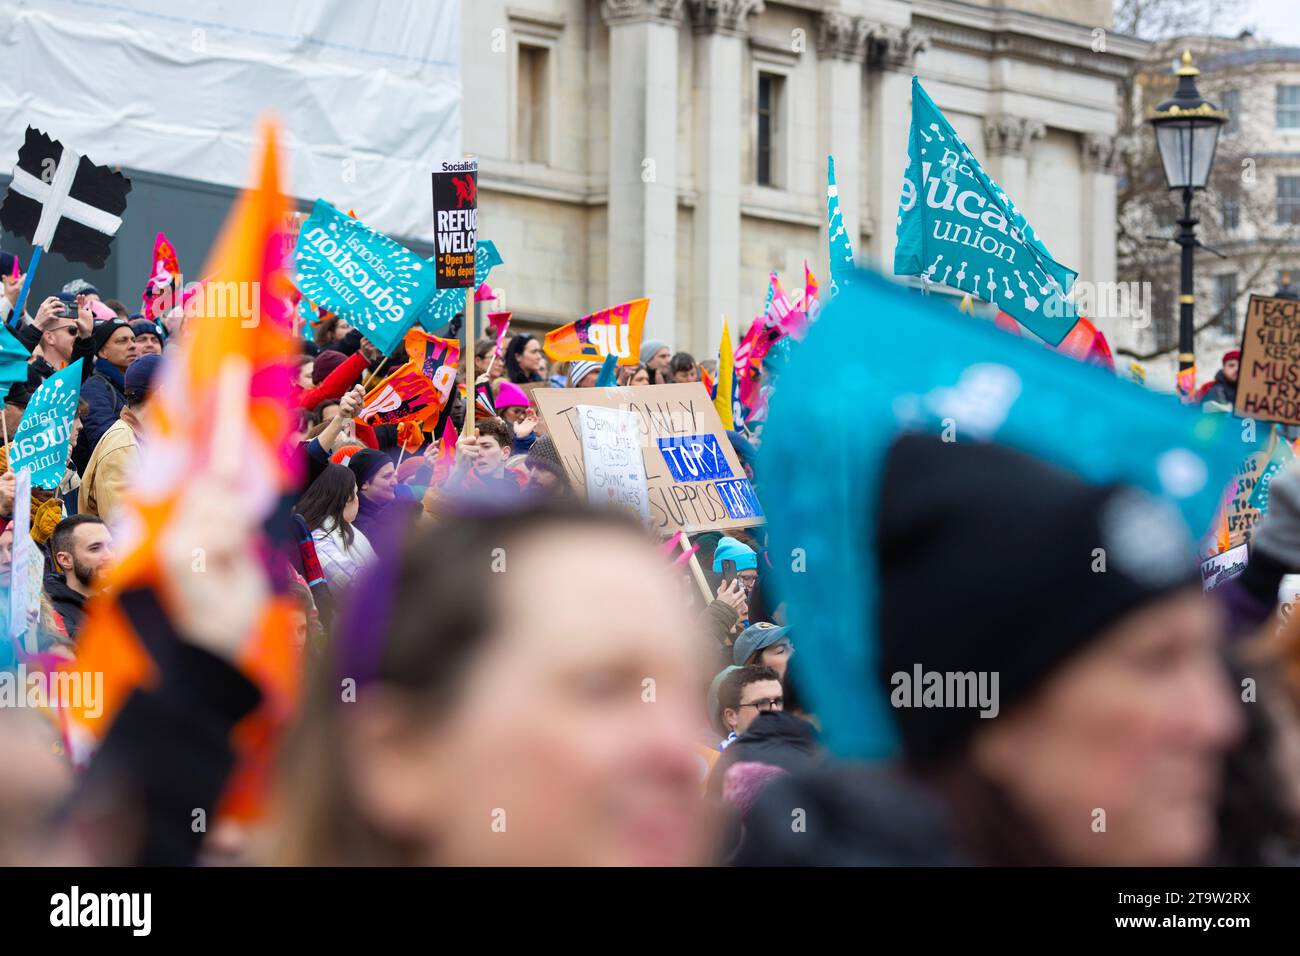 Des pancartes sont organisées lors d'une marche et d'un rassemblement organisés par le NEU (National Education Union) à Londres. Banque D'Images